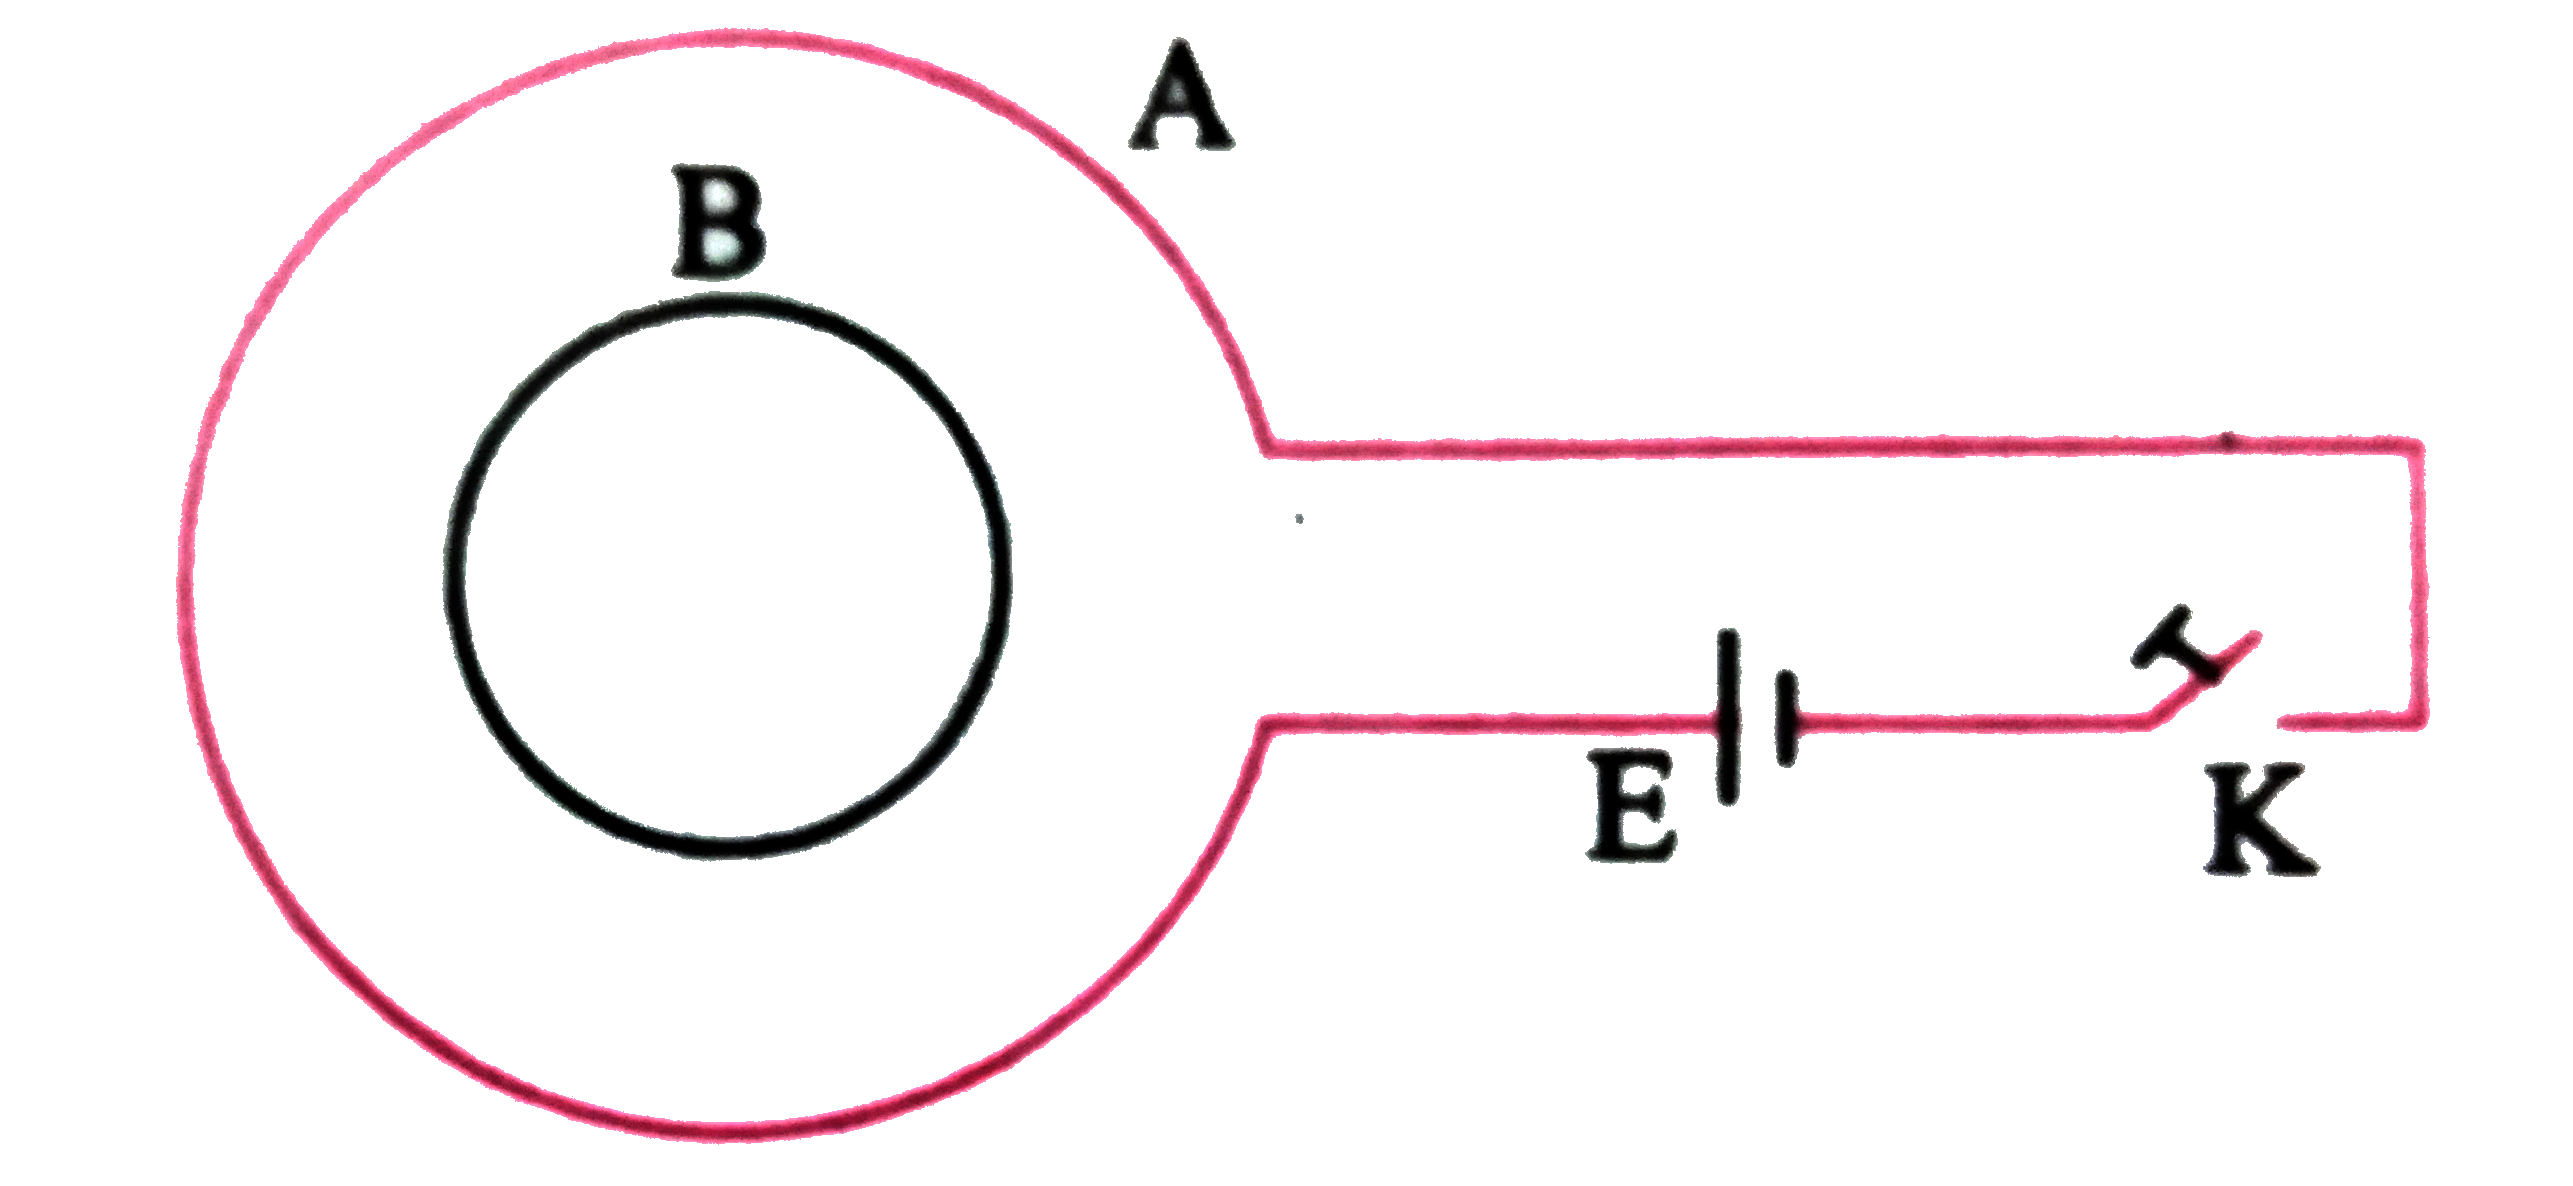 संलग्न चित्र में A और B  कुण्डलियाँ  है ।  E सेल  तथा K  दाब कुंजी  है । दाब कुंजी को बंद  करने पर  और खोलने पर कुंडली B   प्रेरित धारा की दिशा  क्या होगी ?